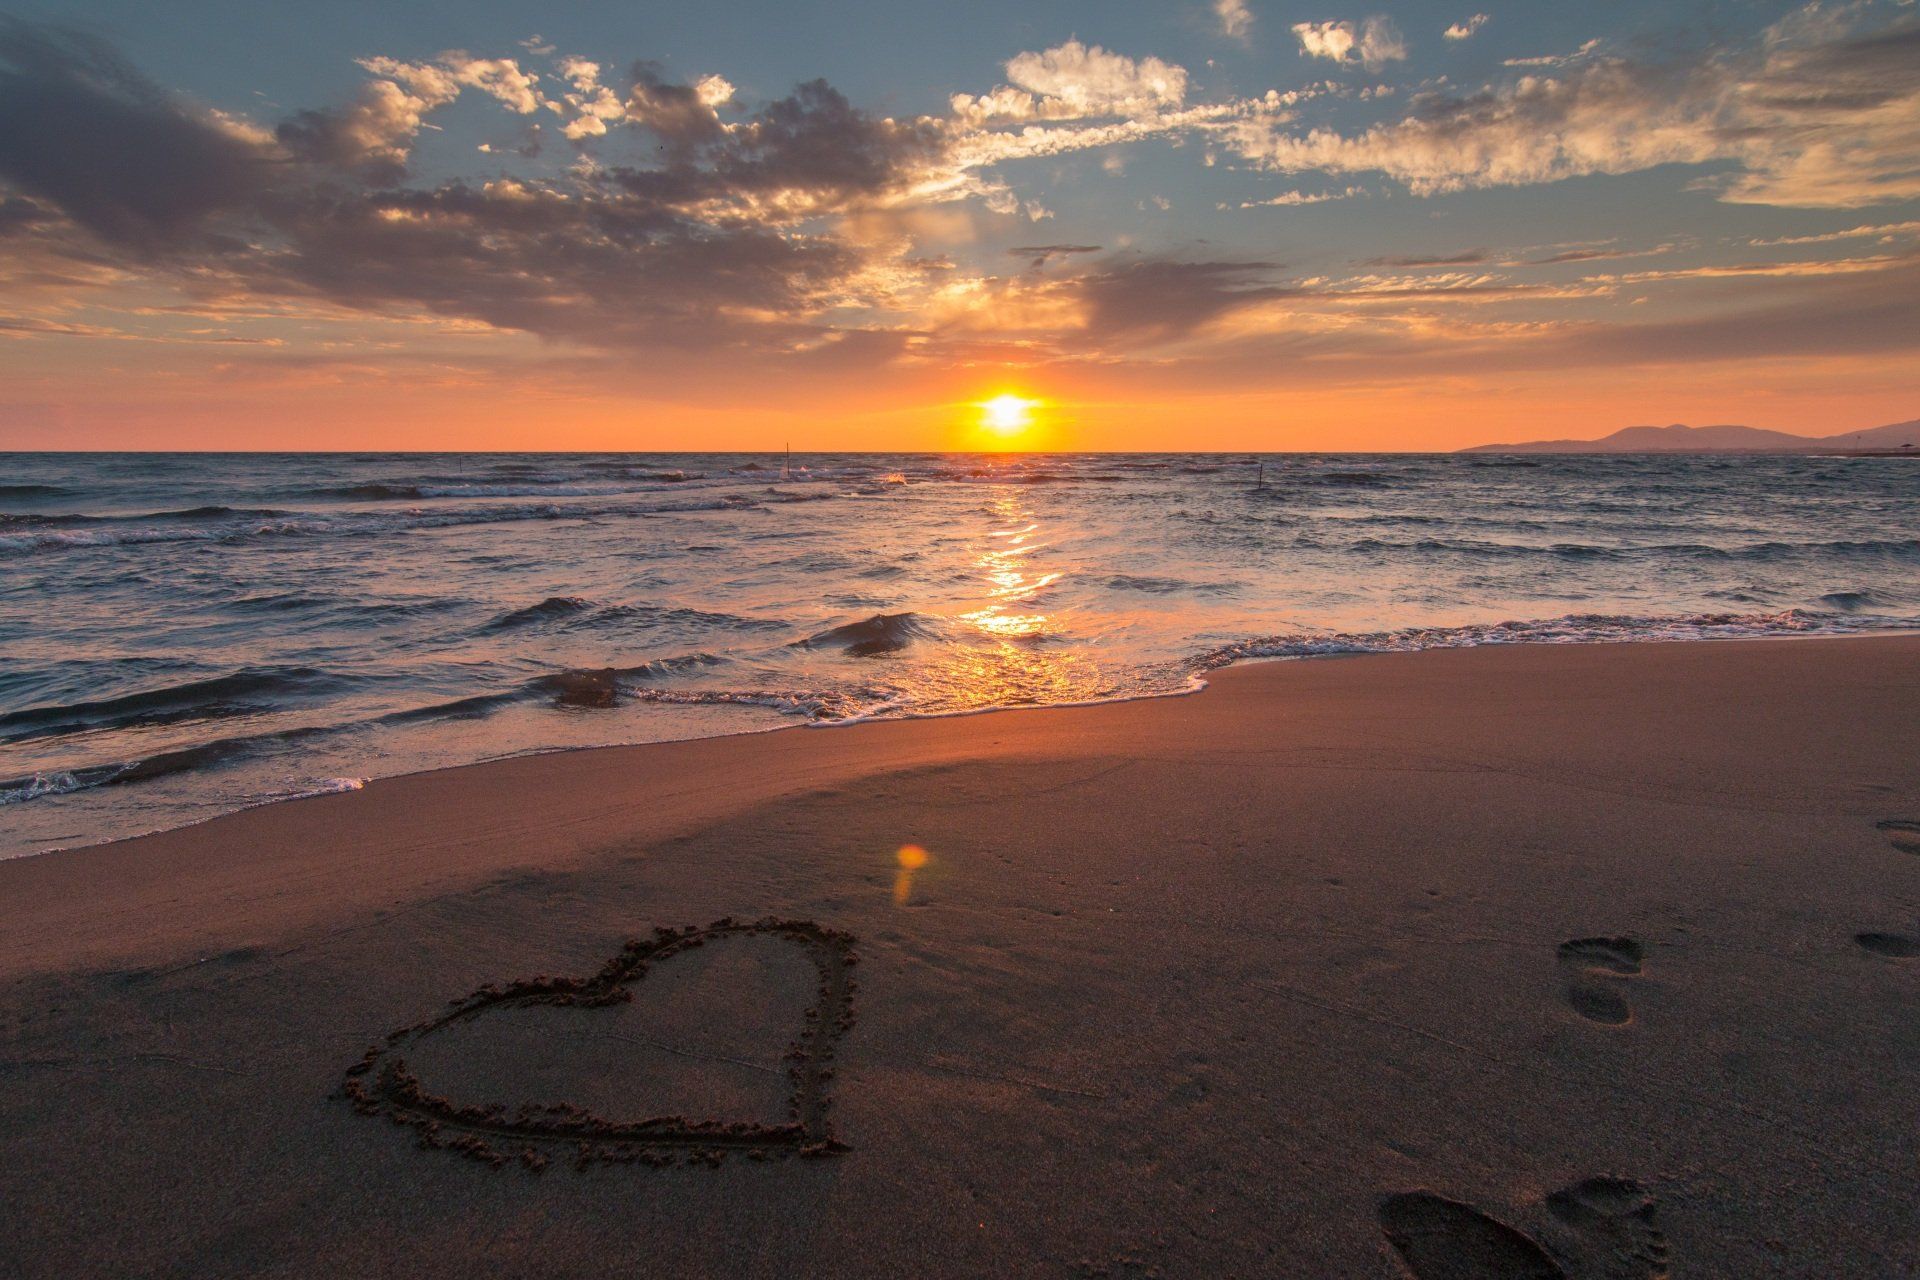 Um coração é desenhado na areia da praia ao pôr do sol.